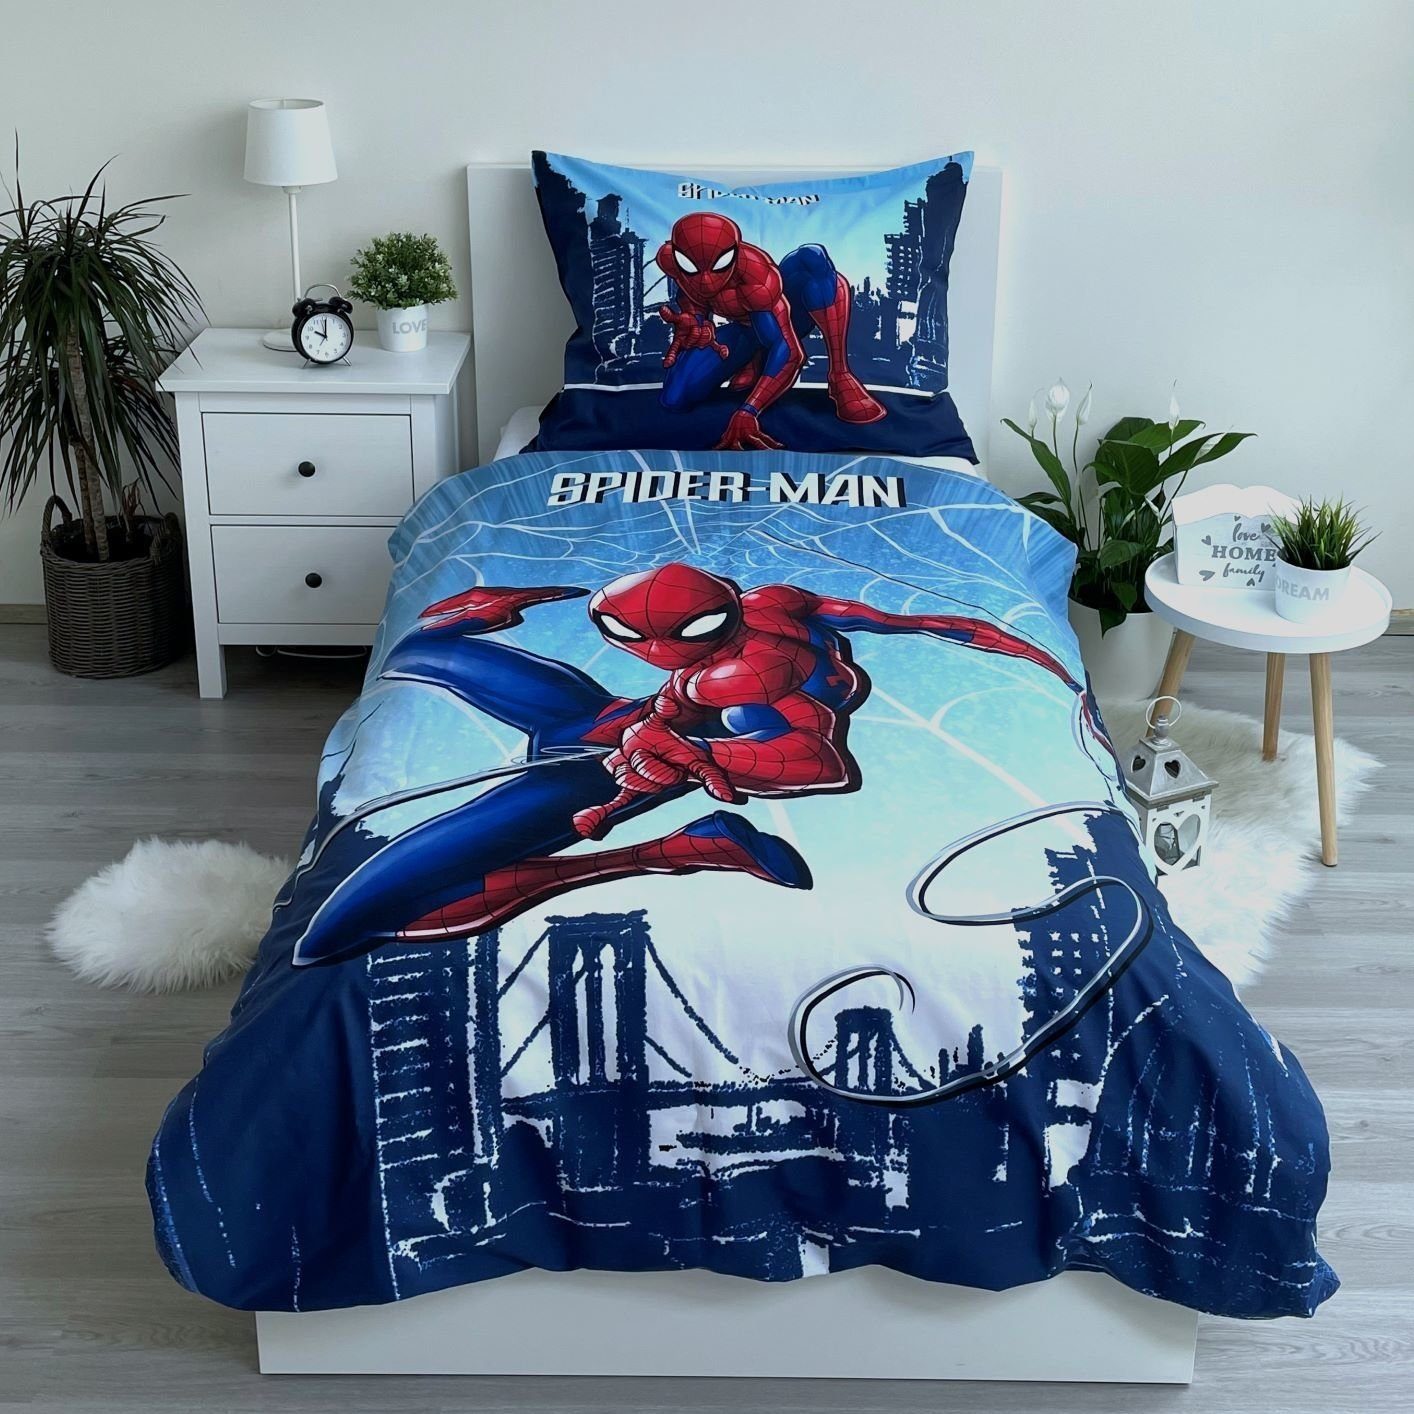 Bettwäsche Spiderman Wende Bettwäsche Kopfkissen Bettdecke für 135x200 cm,  Spiderman, 100% Baumwolle, 2 teilig